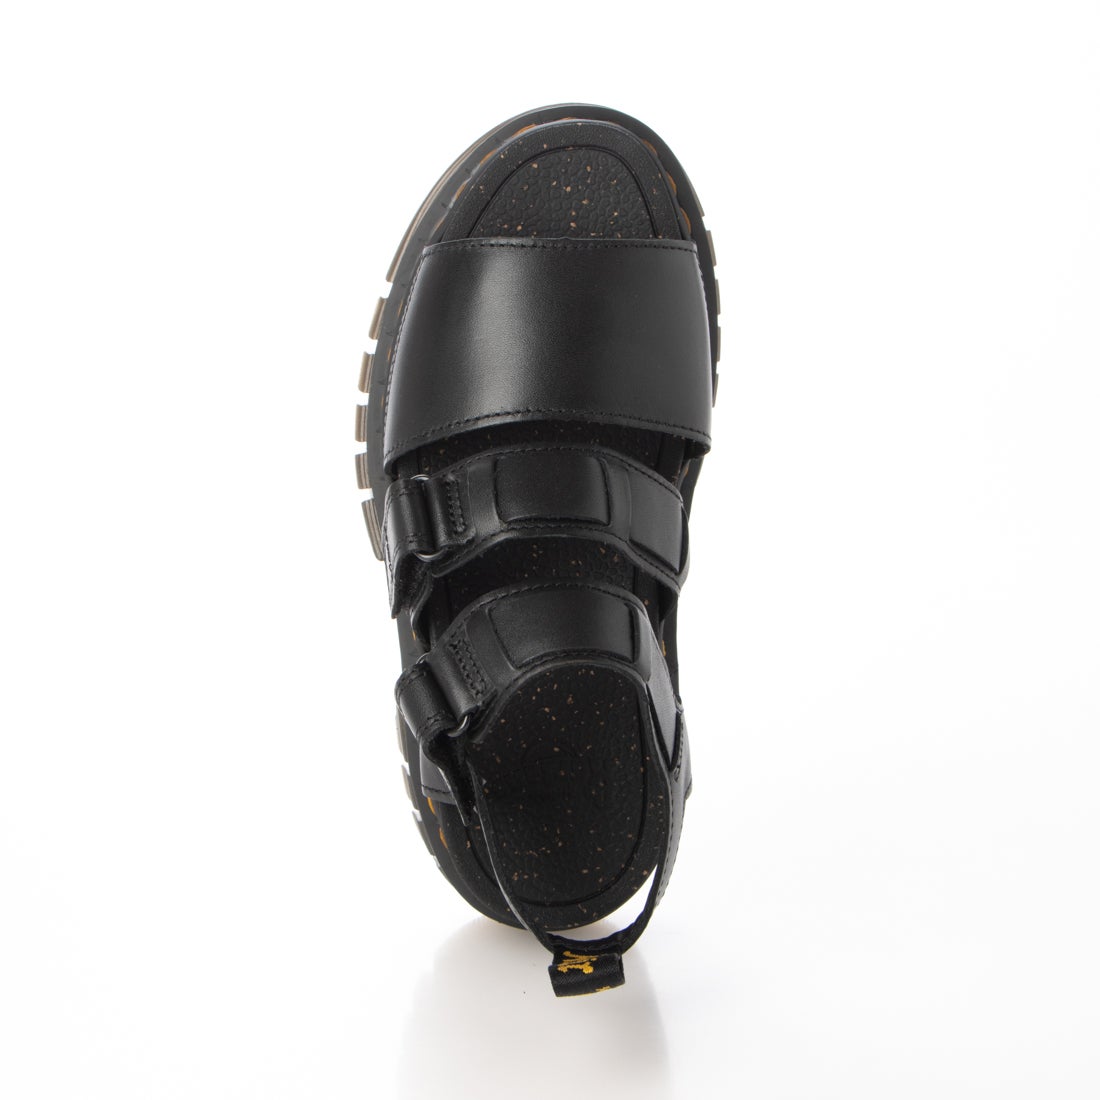 ドクターマーチン Mica sandal サンダル グルカシューズ UK3 黒3cm最大幅